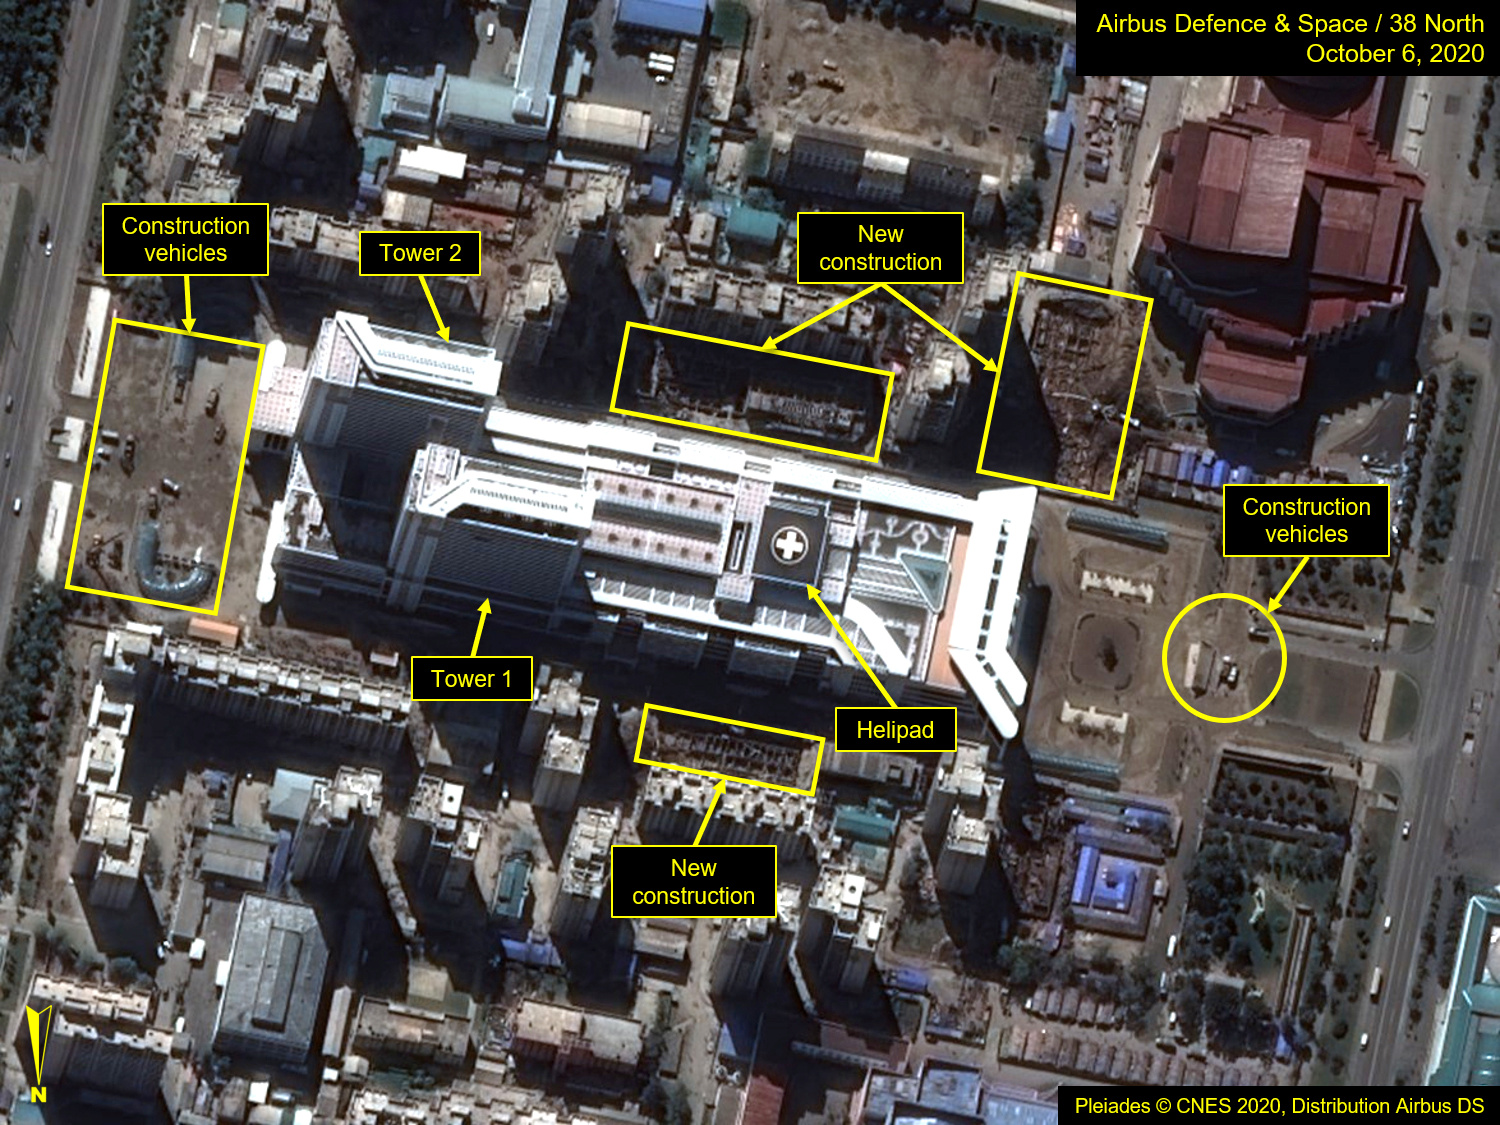 Una imagen satelital muestra el Hospital General de Pyongyang y la construcción circundante antes del 75º aniversario de la fundación del Partido de los Trabajadores (Airbus Defence & Space/38 North/Pleiades © CNES 2020 via REUTERS)